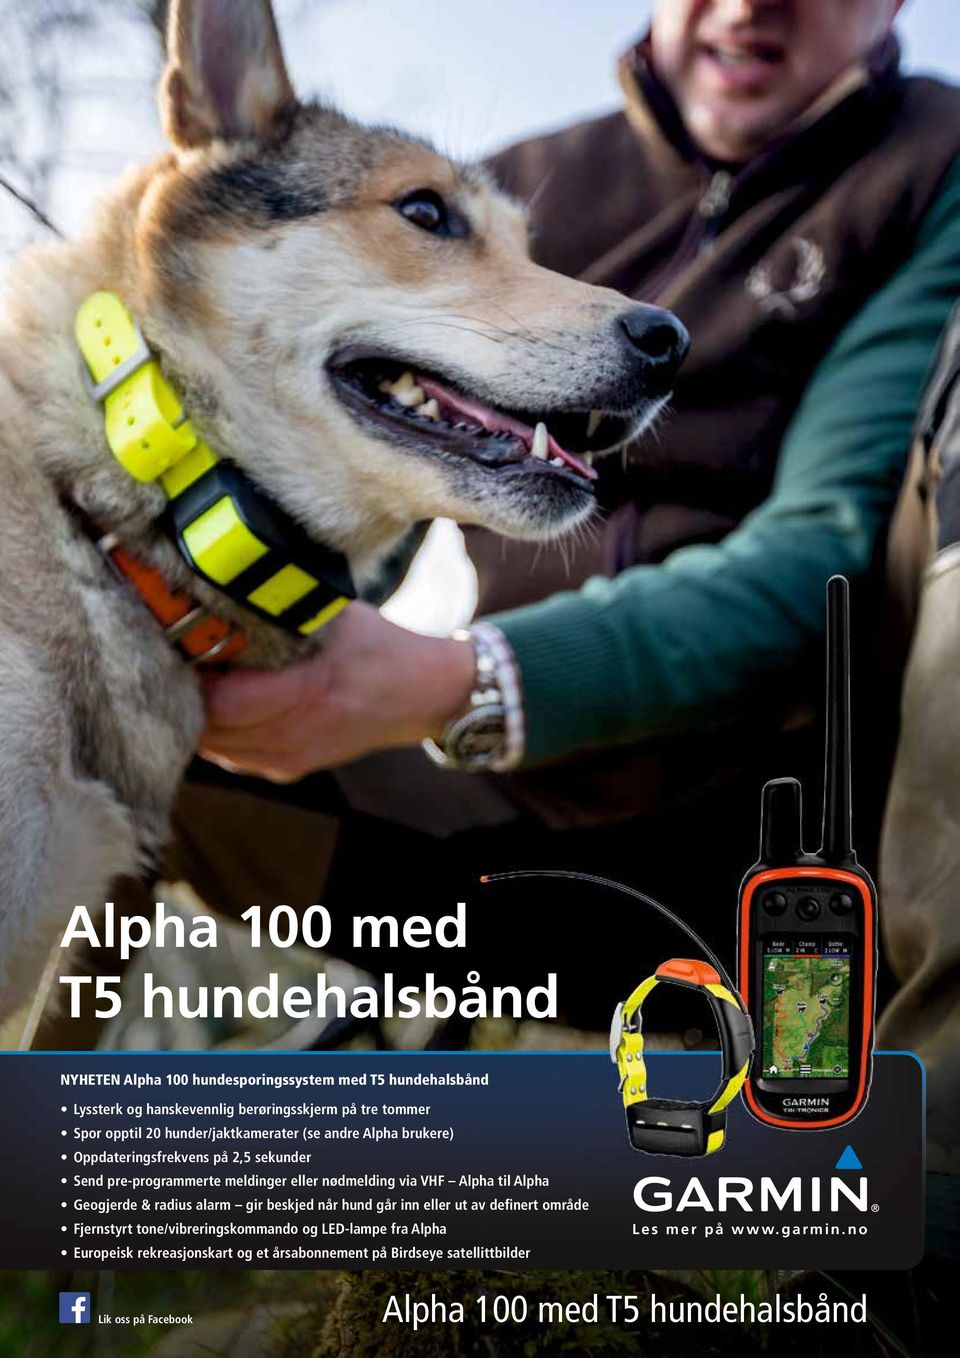 Alpha til Alpha Geogjerde & radius alarm gir beskjed når hund går inn eller ut av definert område Fjernstyrt tone/vibreringskommando og LED-lampe fra